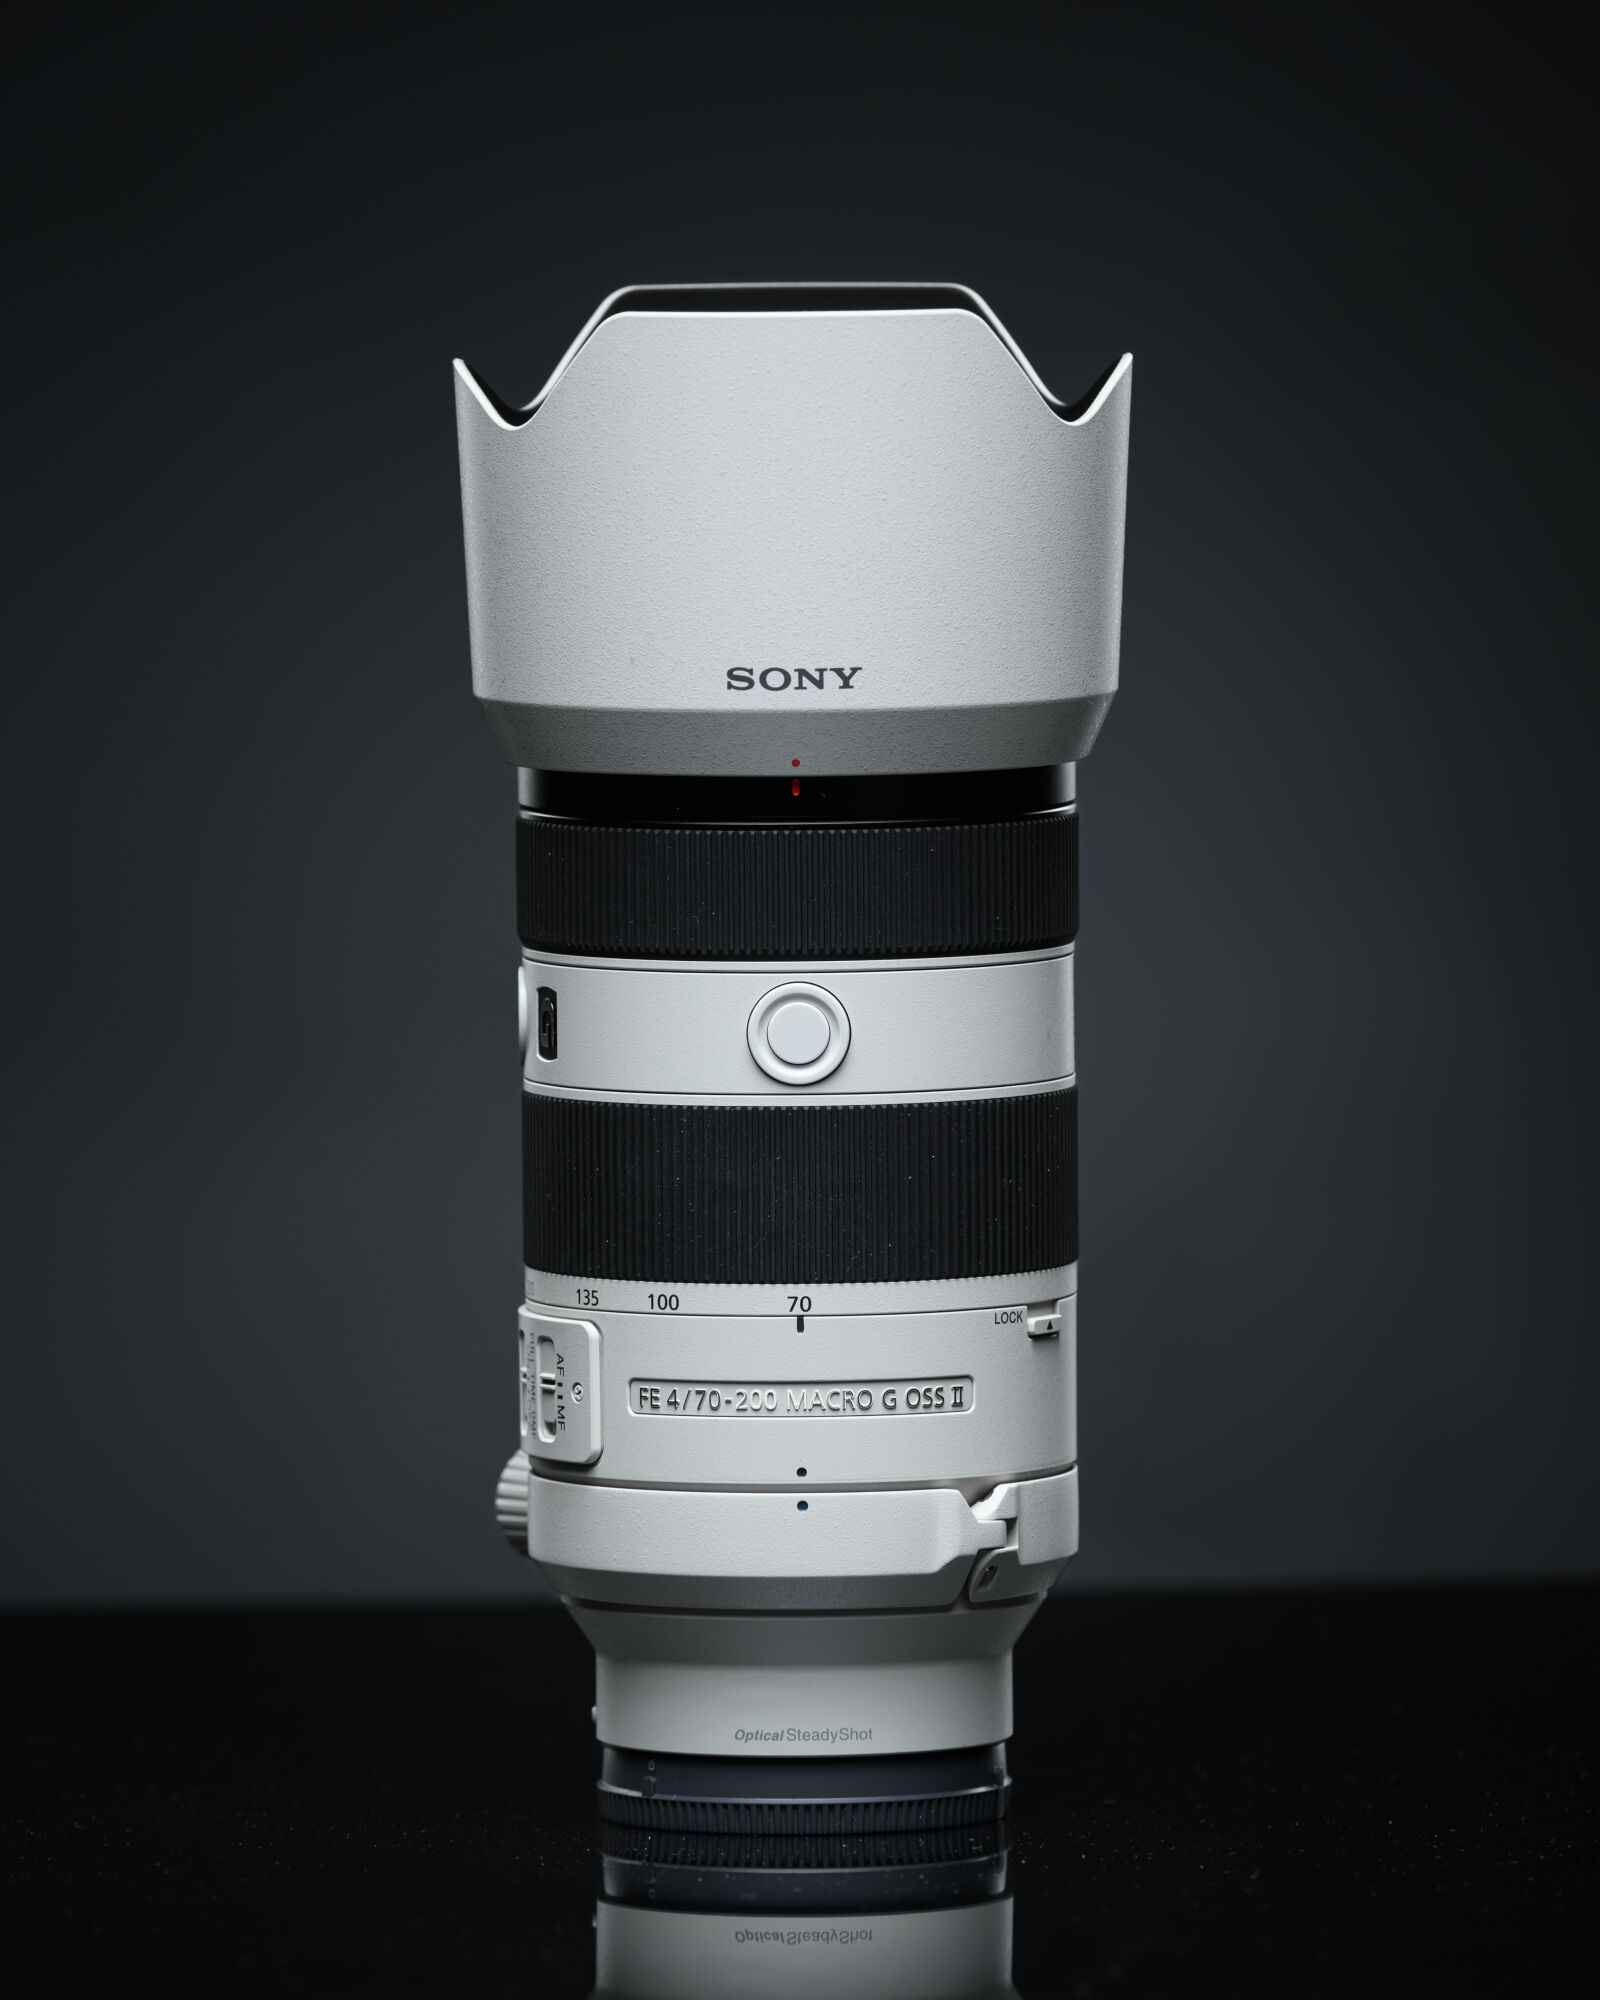 Nikon Z9 sample photo. Sony fe 70-200mm f4 photography